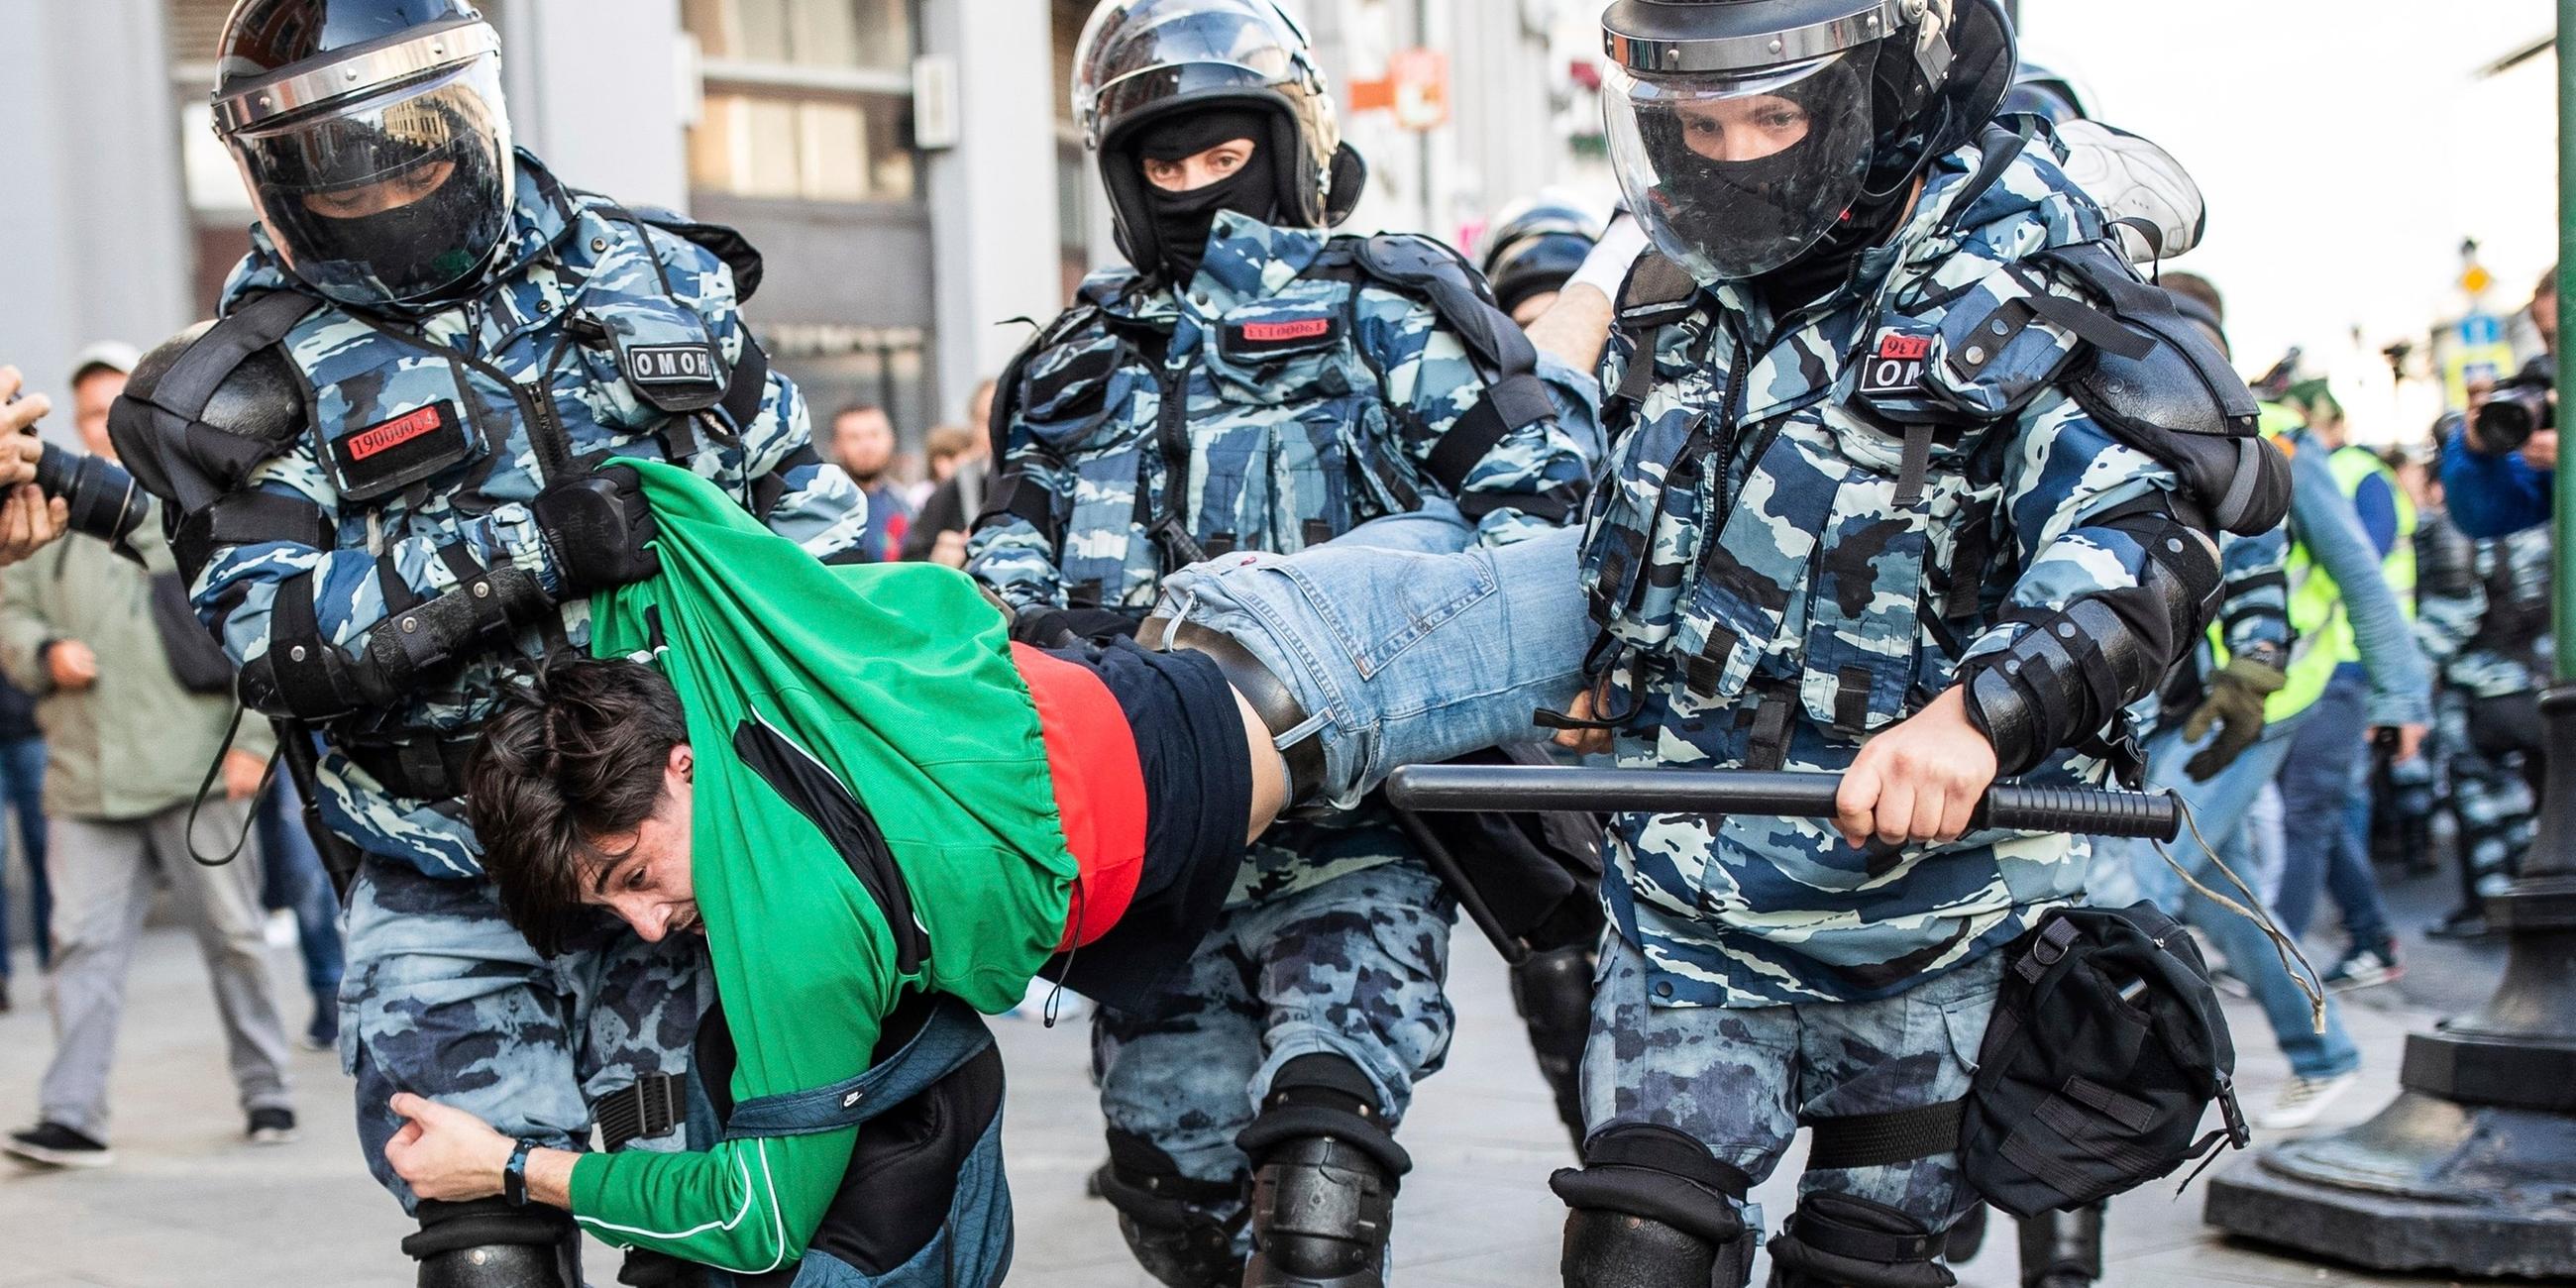 Russland, Moskau: Ein Teilnehmer einer Protestdemo wird von 3 Polizisten weg getragen. Archivbild